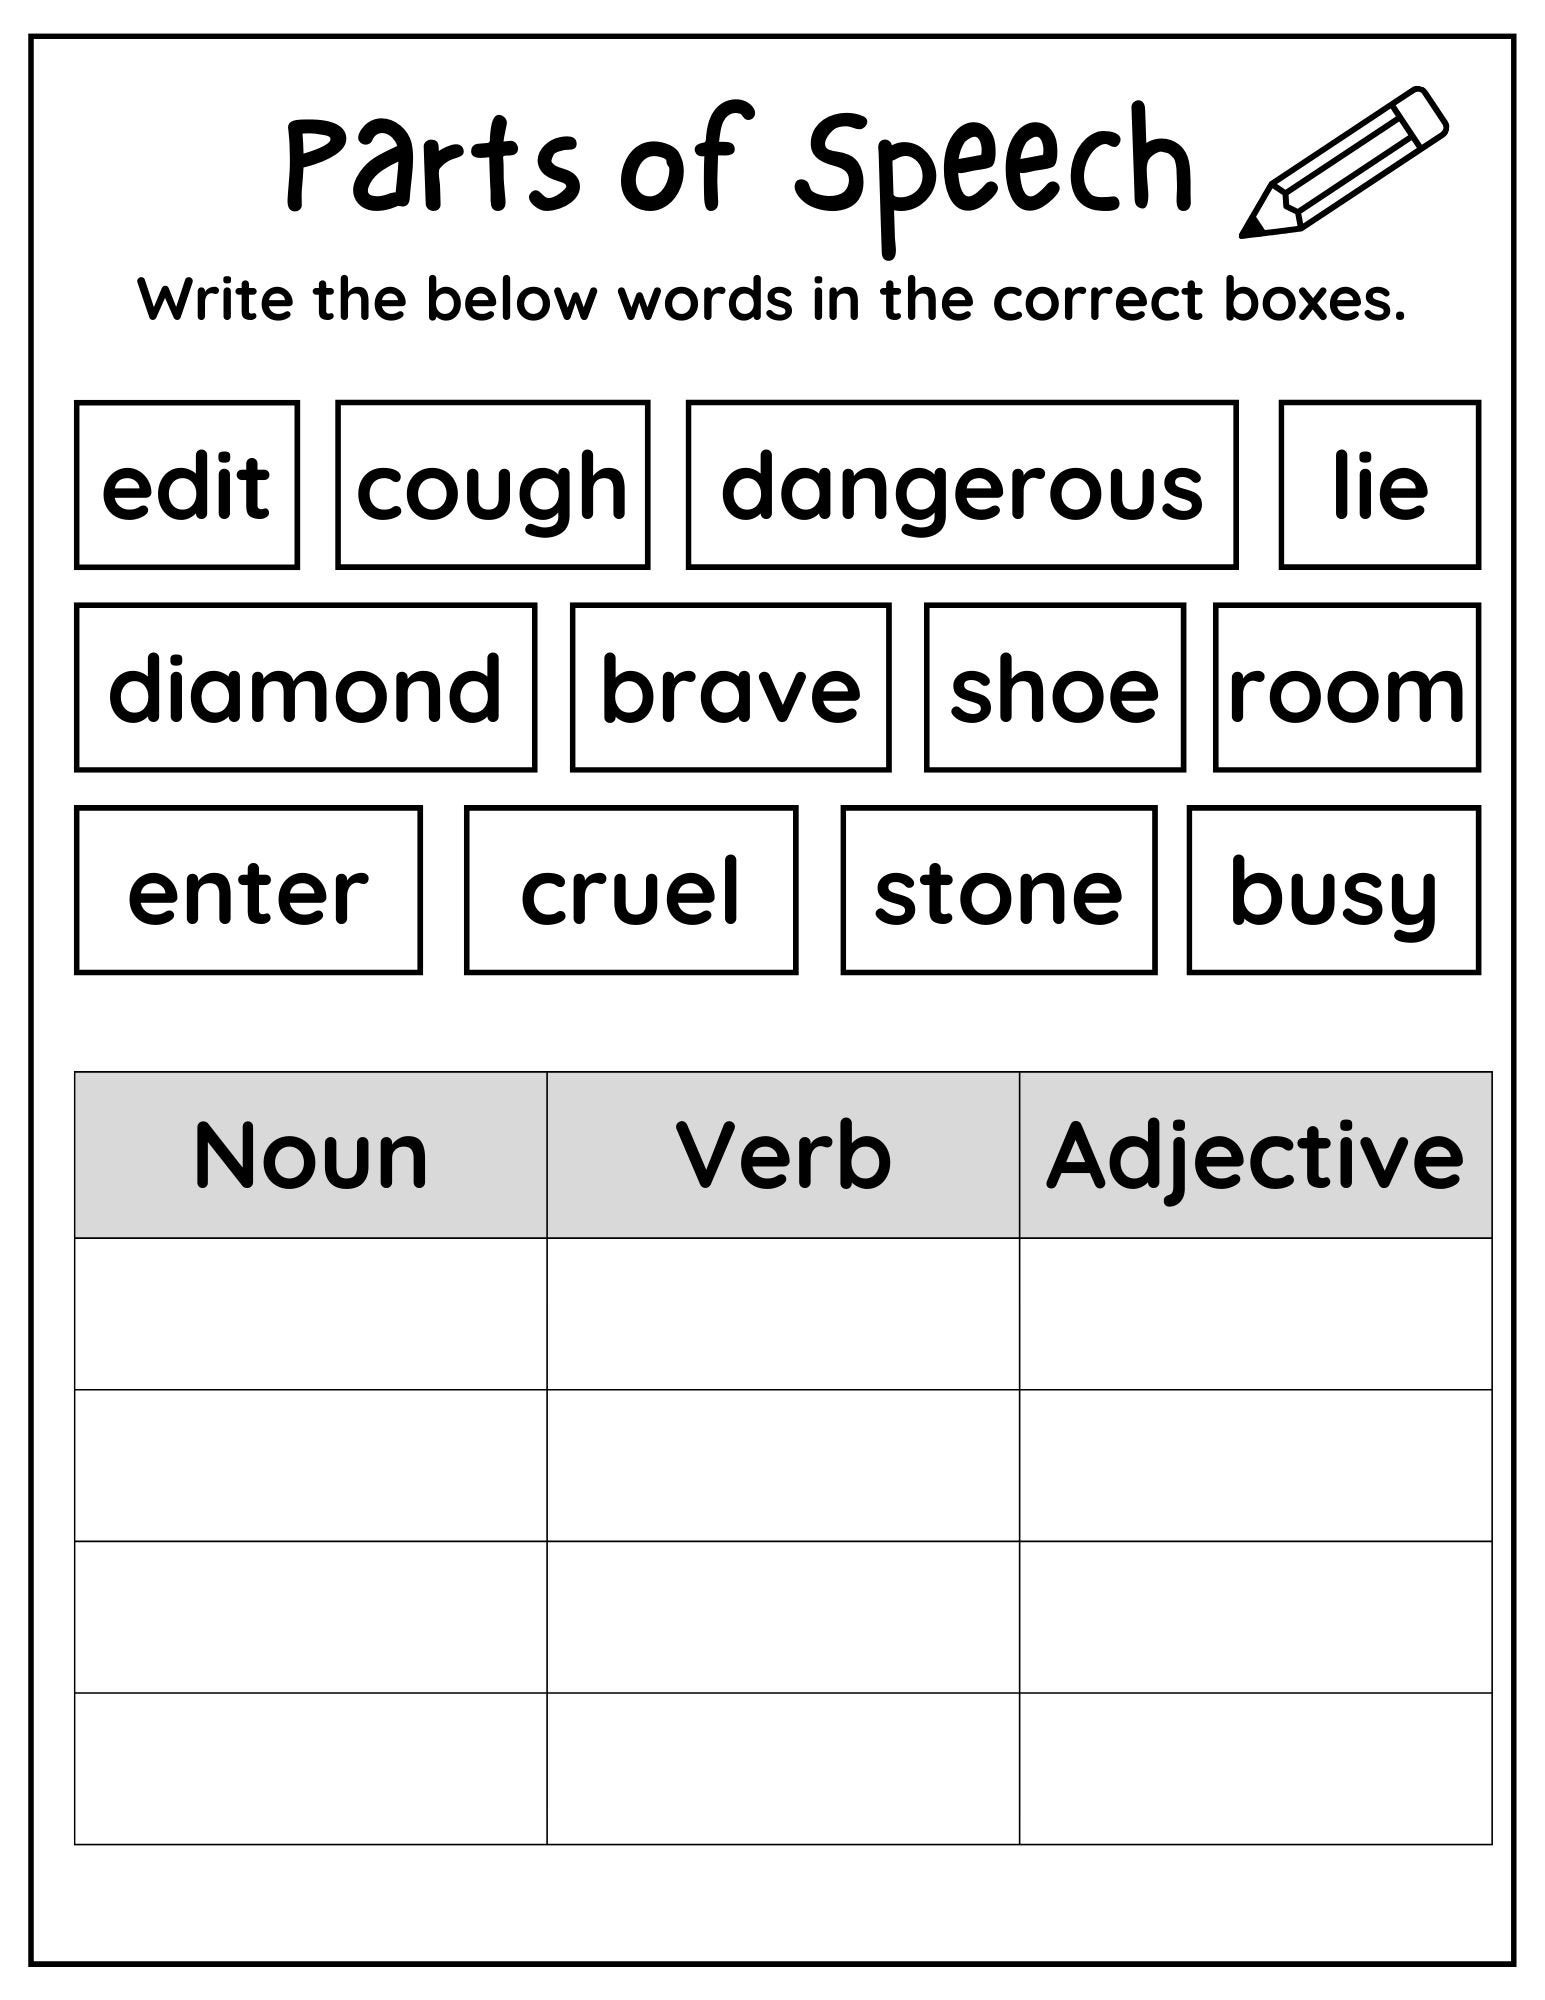 grammar worksheet on parts of speech